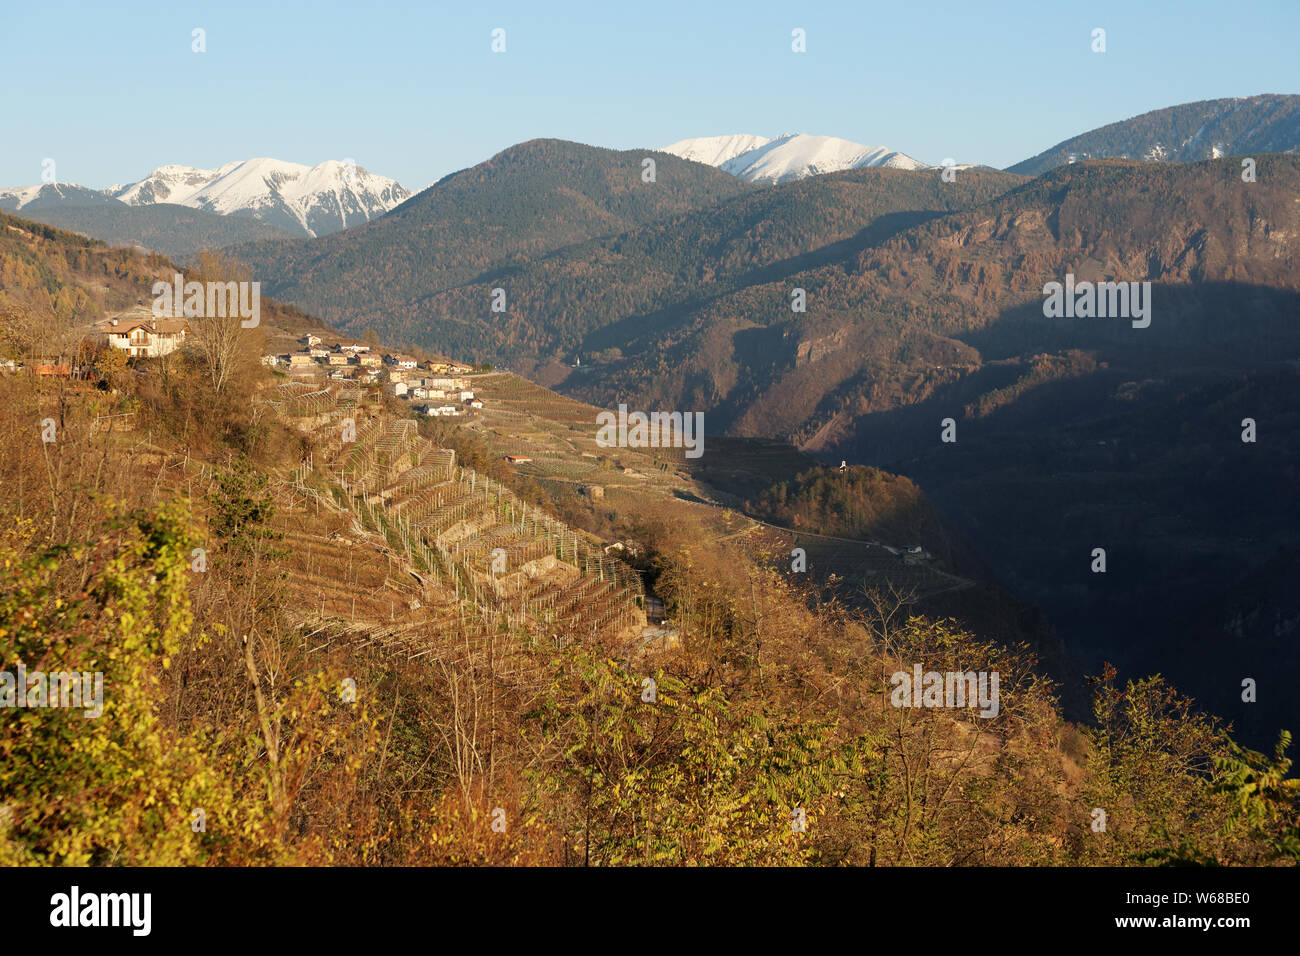 Di Cembra valley, Trentino area, Northern Italy Stock Photo